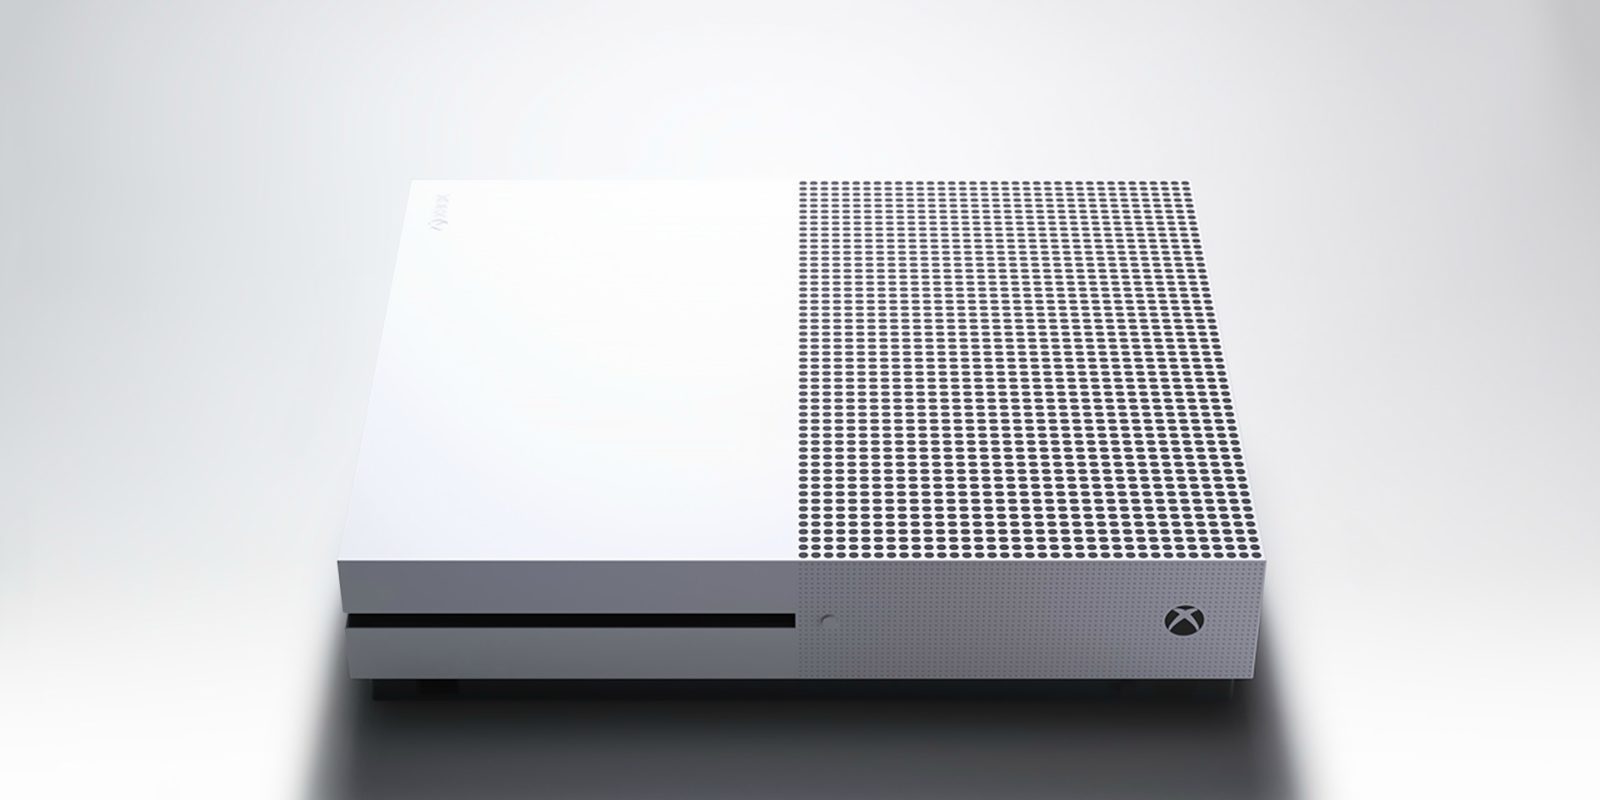 El menú de Xbox One se vuelve totalmente personalizable con su última actualización